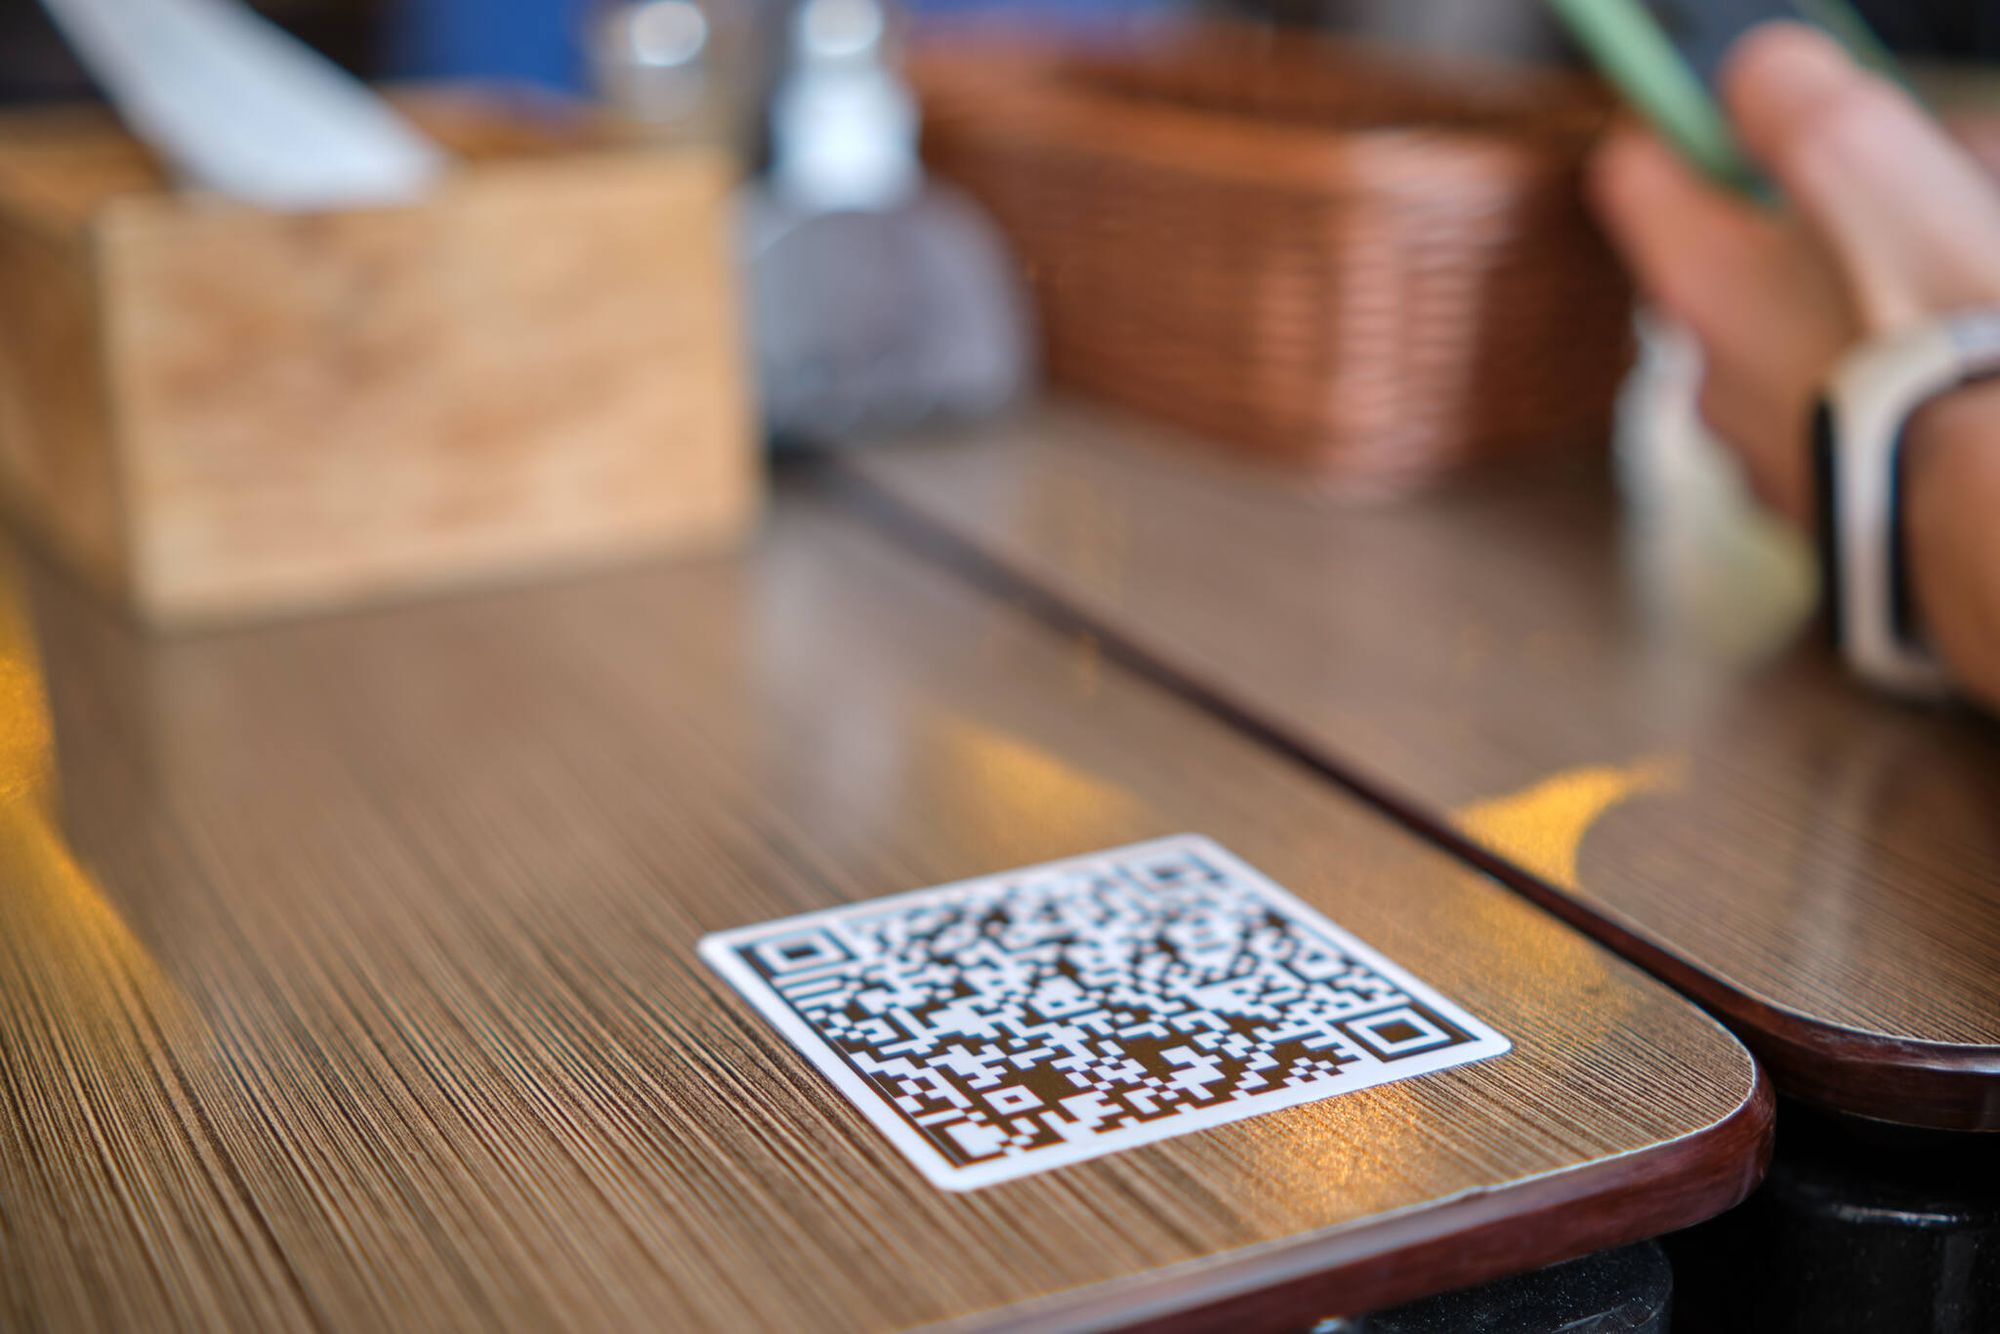 Close-up of a guest's hand and a QR code on a table